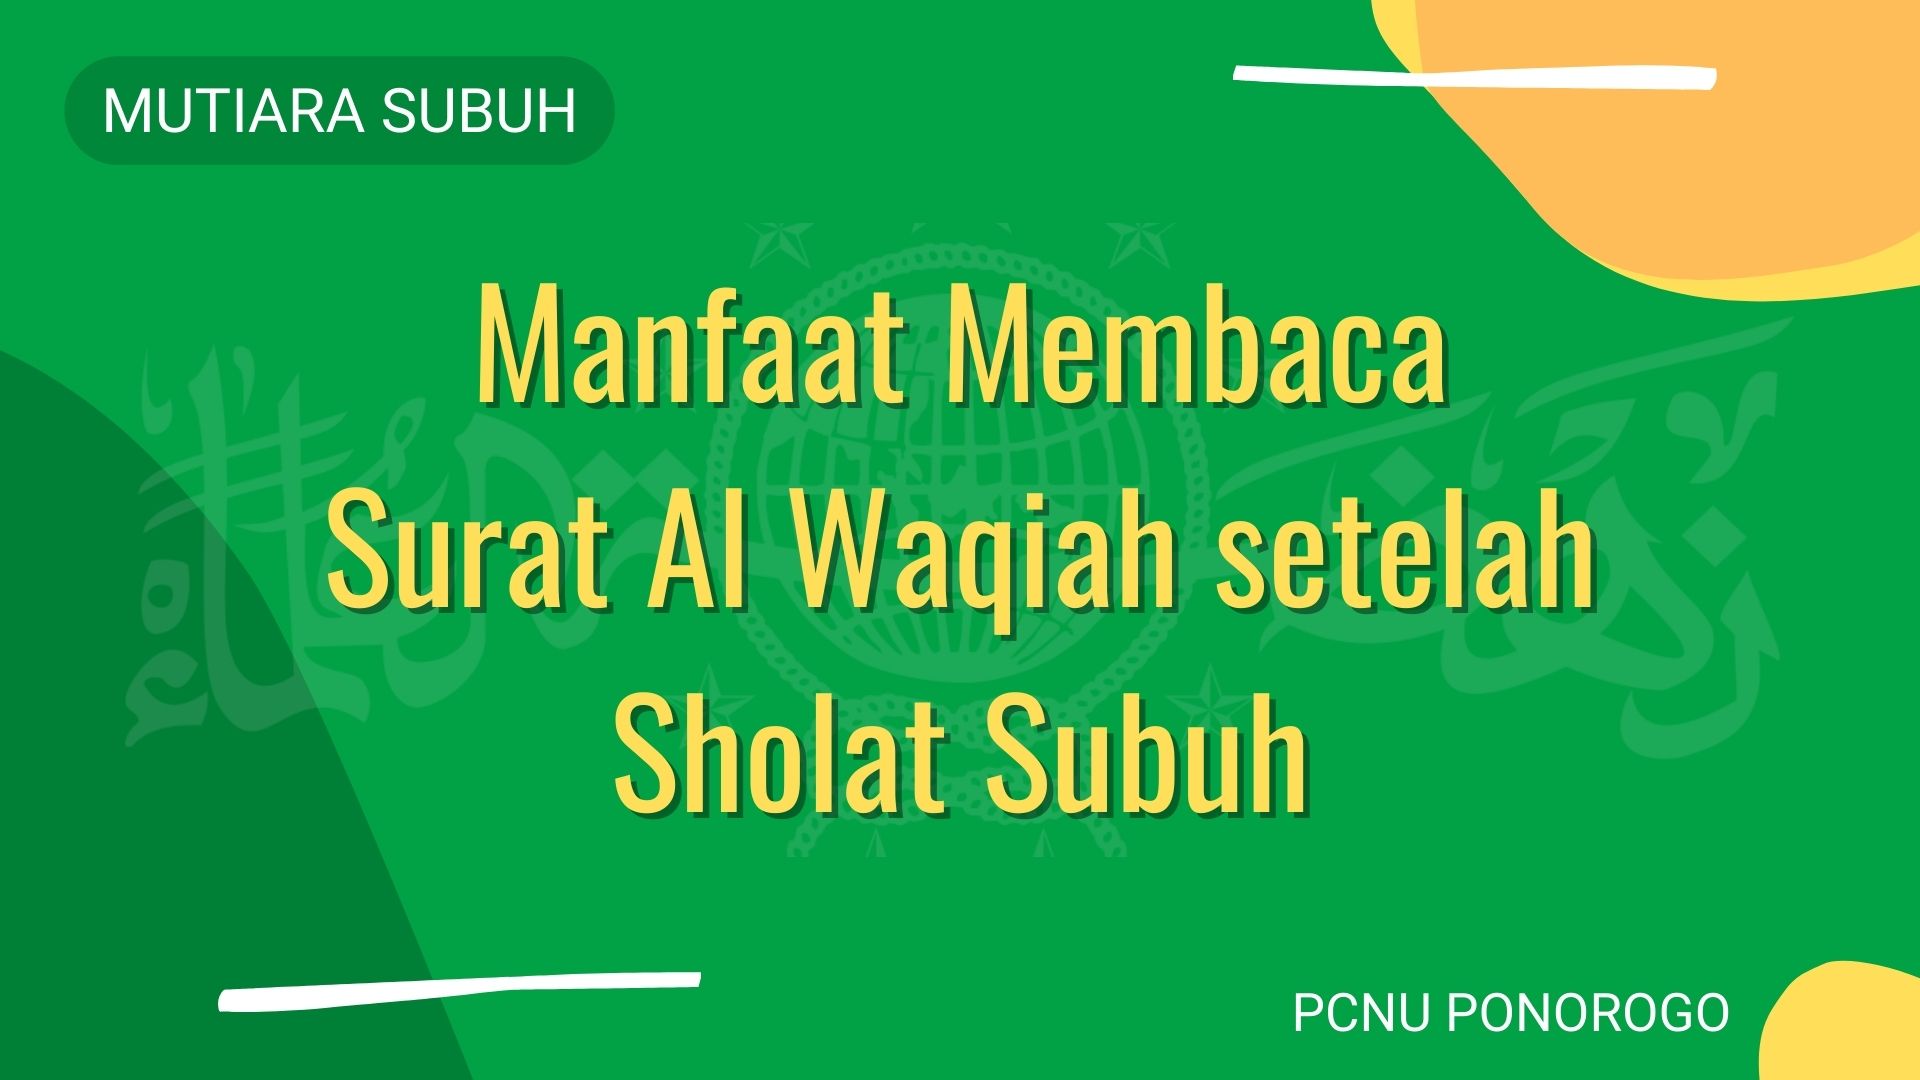 Mutiara Subuh - Manfaat Membaca Surat Al Waqiah setelah Sholat Subuh